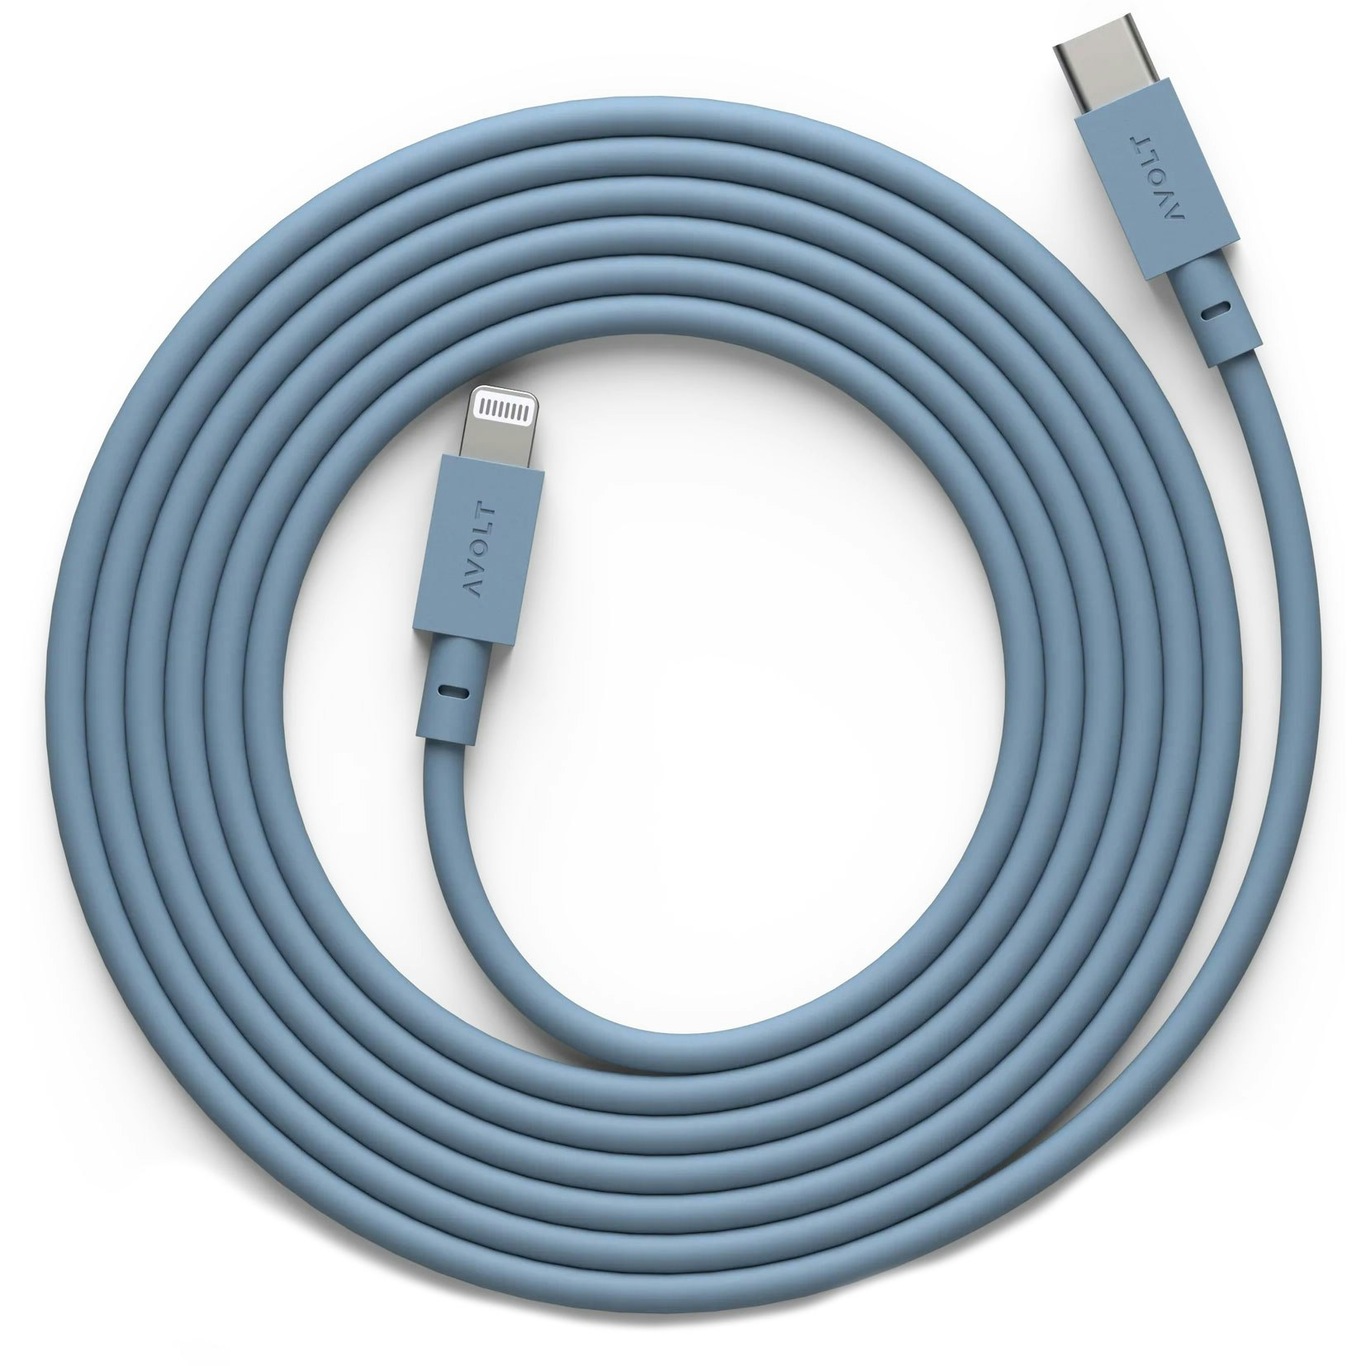 Cable 1 Opladningskabel USB-C / Lightning 2 m, Hajblåt